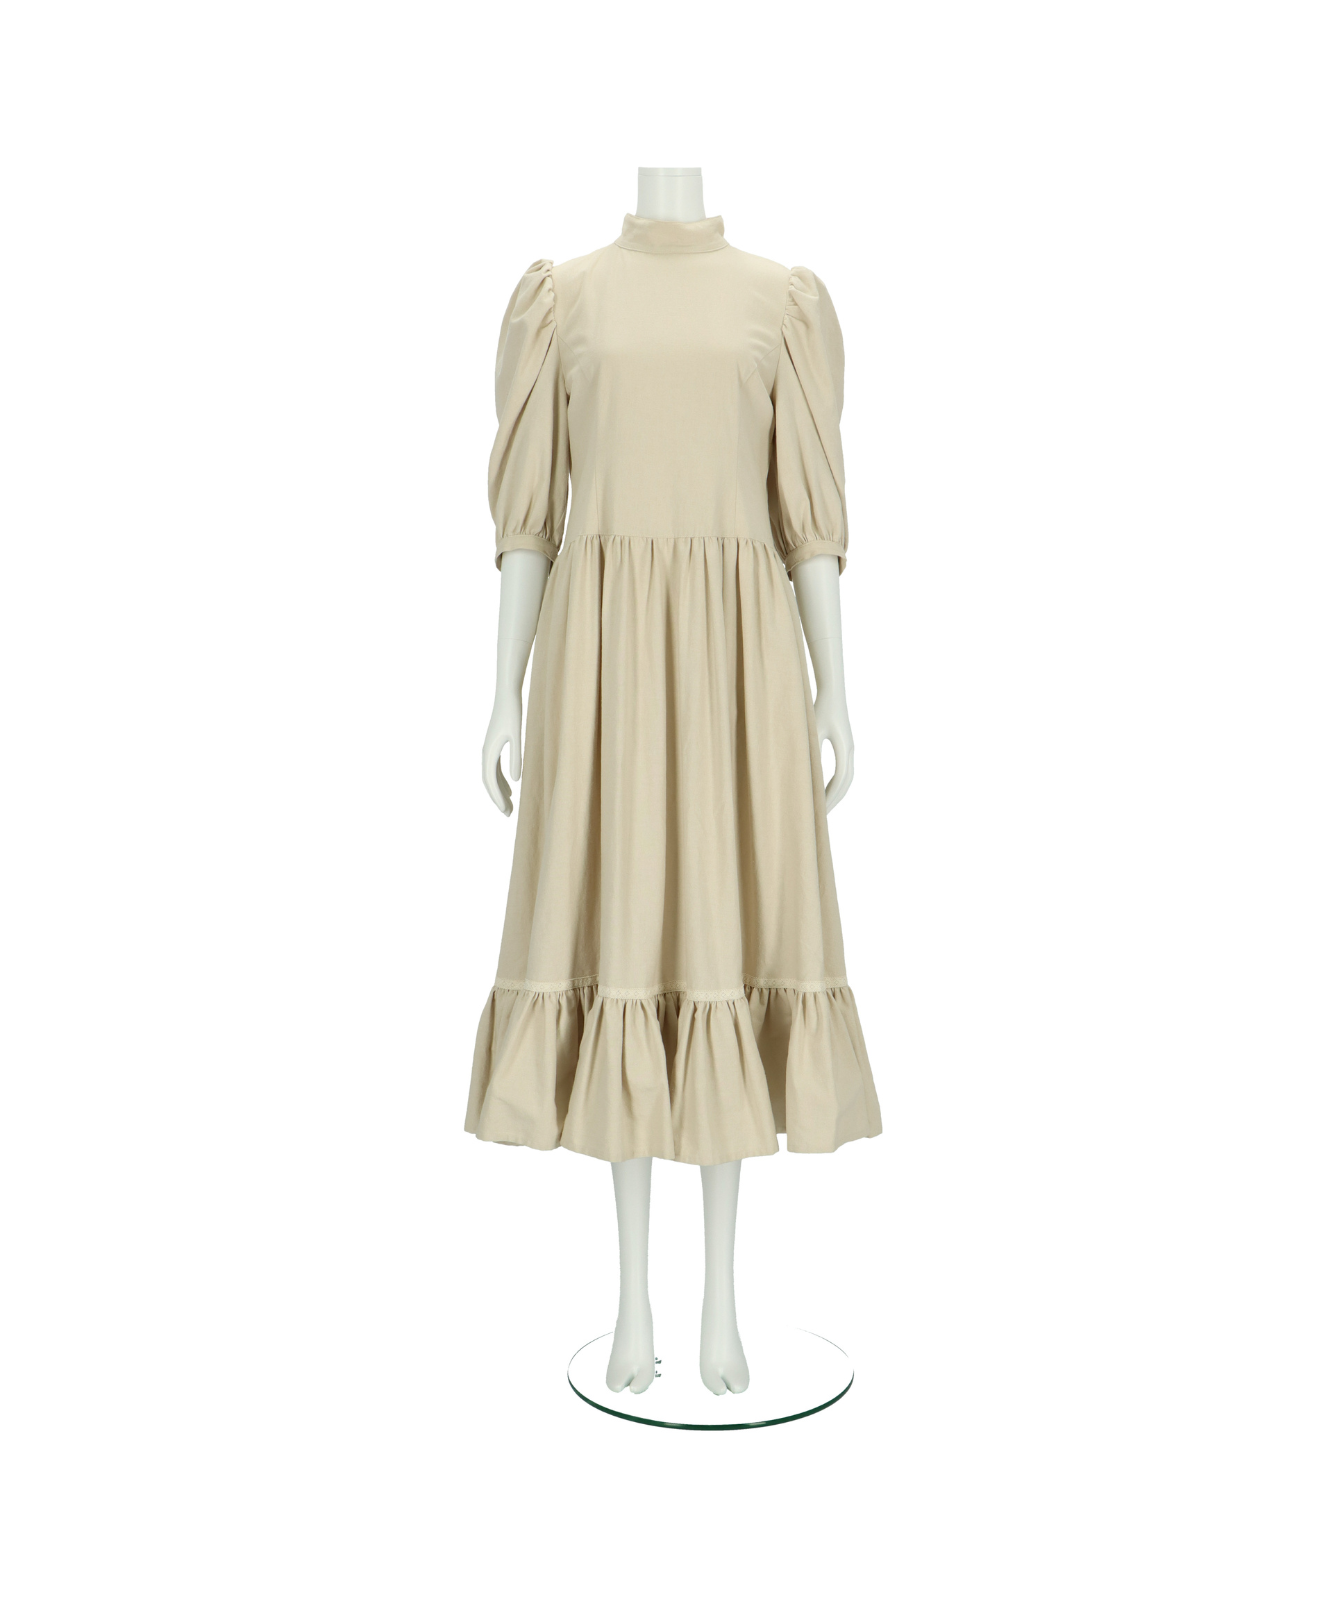 クラシック庭園公主洋服LaceGardenMDDMSD4分BJD人形服1/4MDD|MSD|SDM